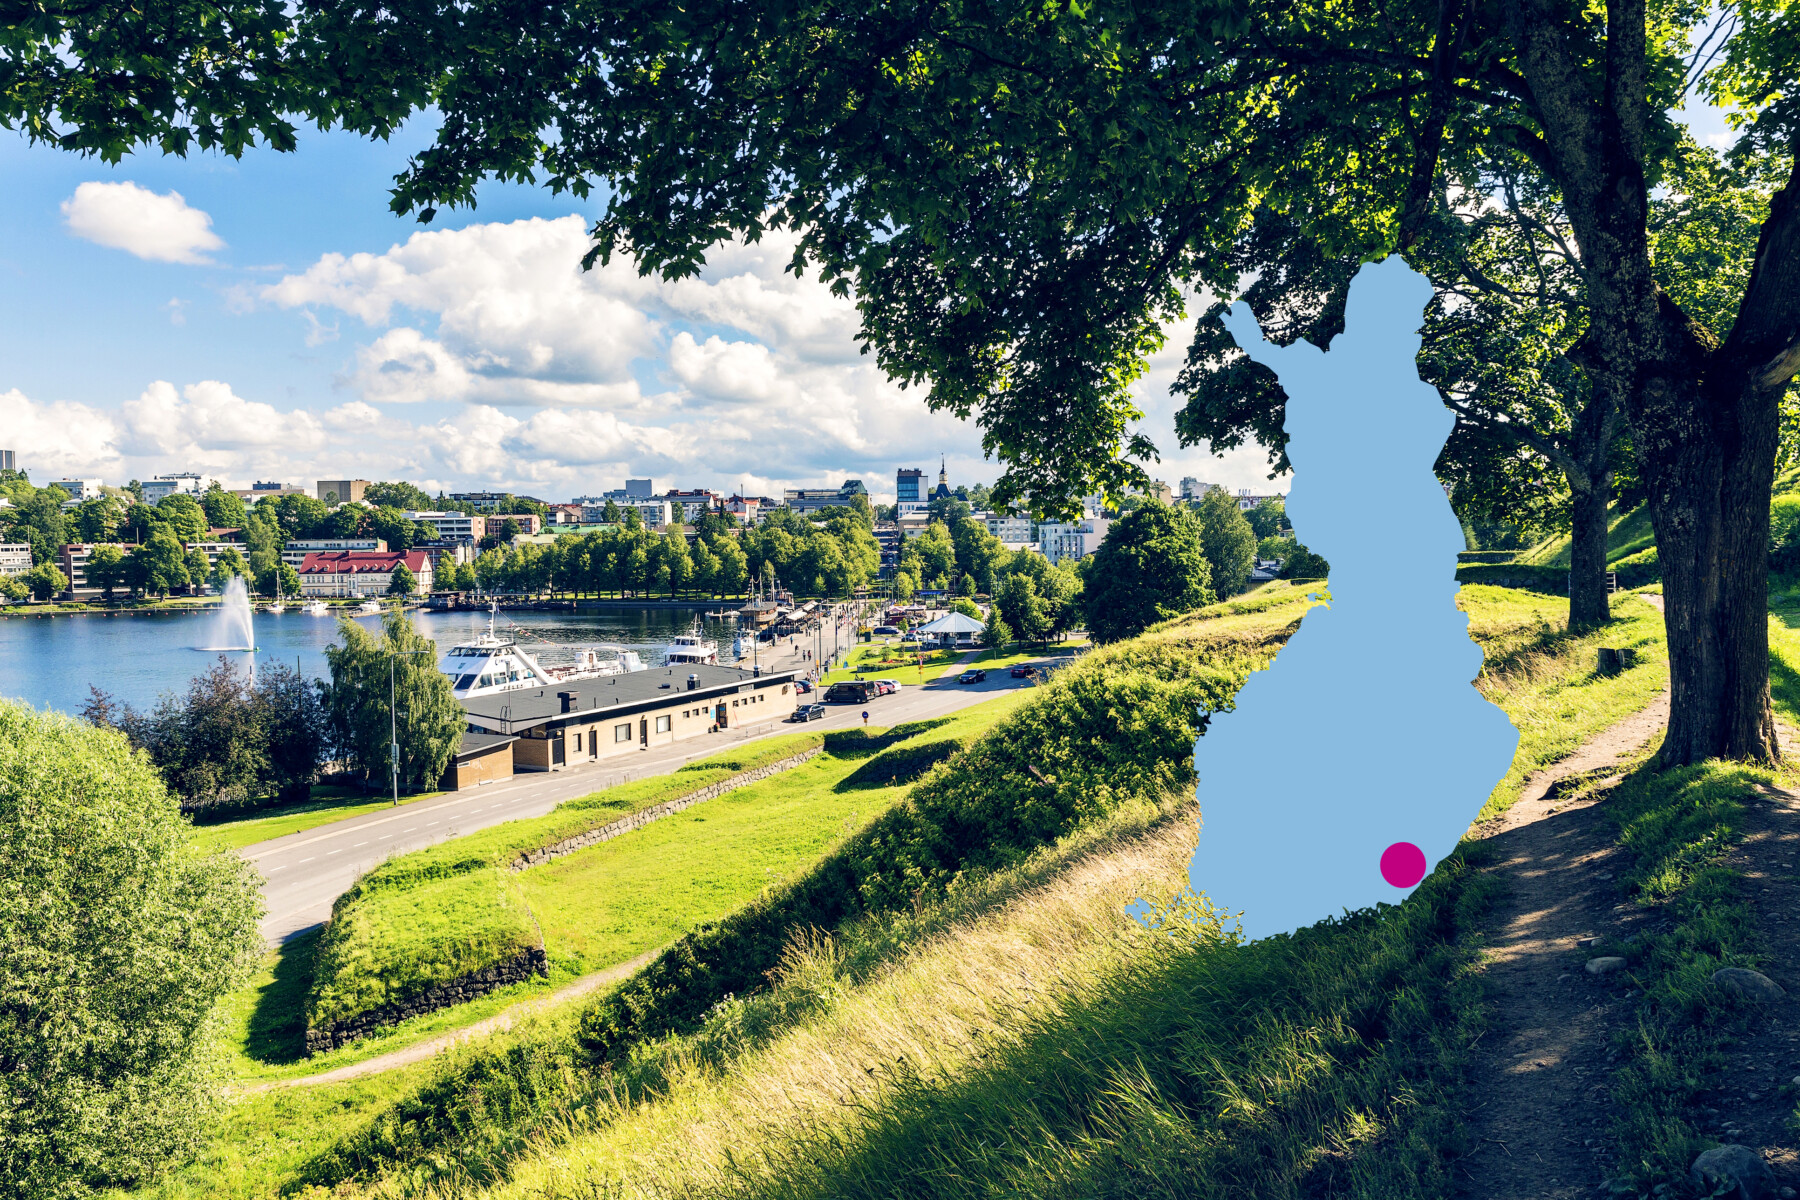 تظهر المباني والميناء في منظر من تل أخضر في حديقة في لابينرنتا، وهي مدينة في جنوبي شرق فنلندا على شاطئ بحيرة سايما.